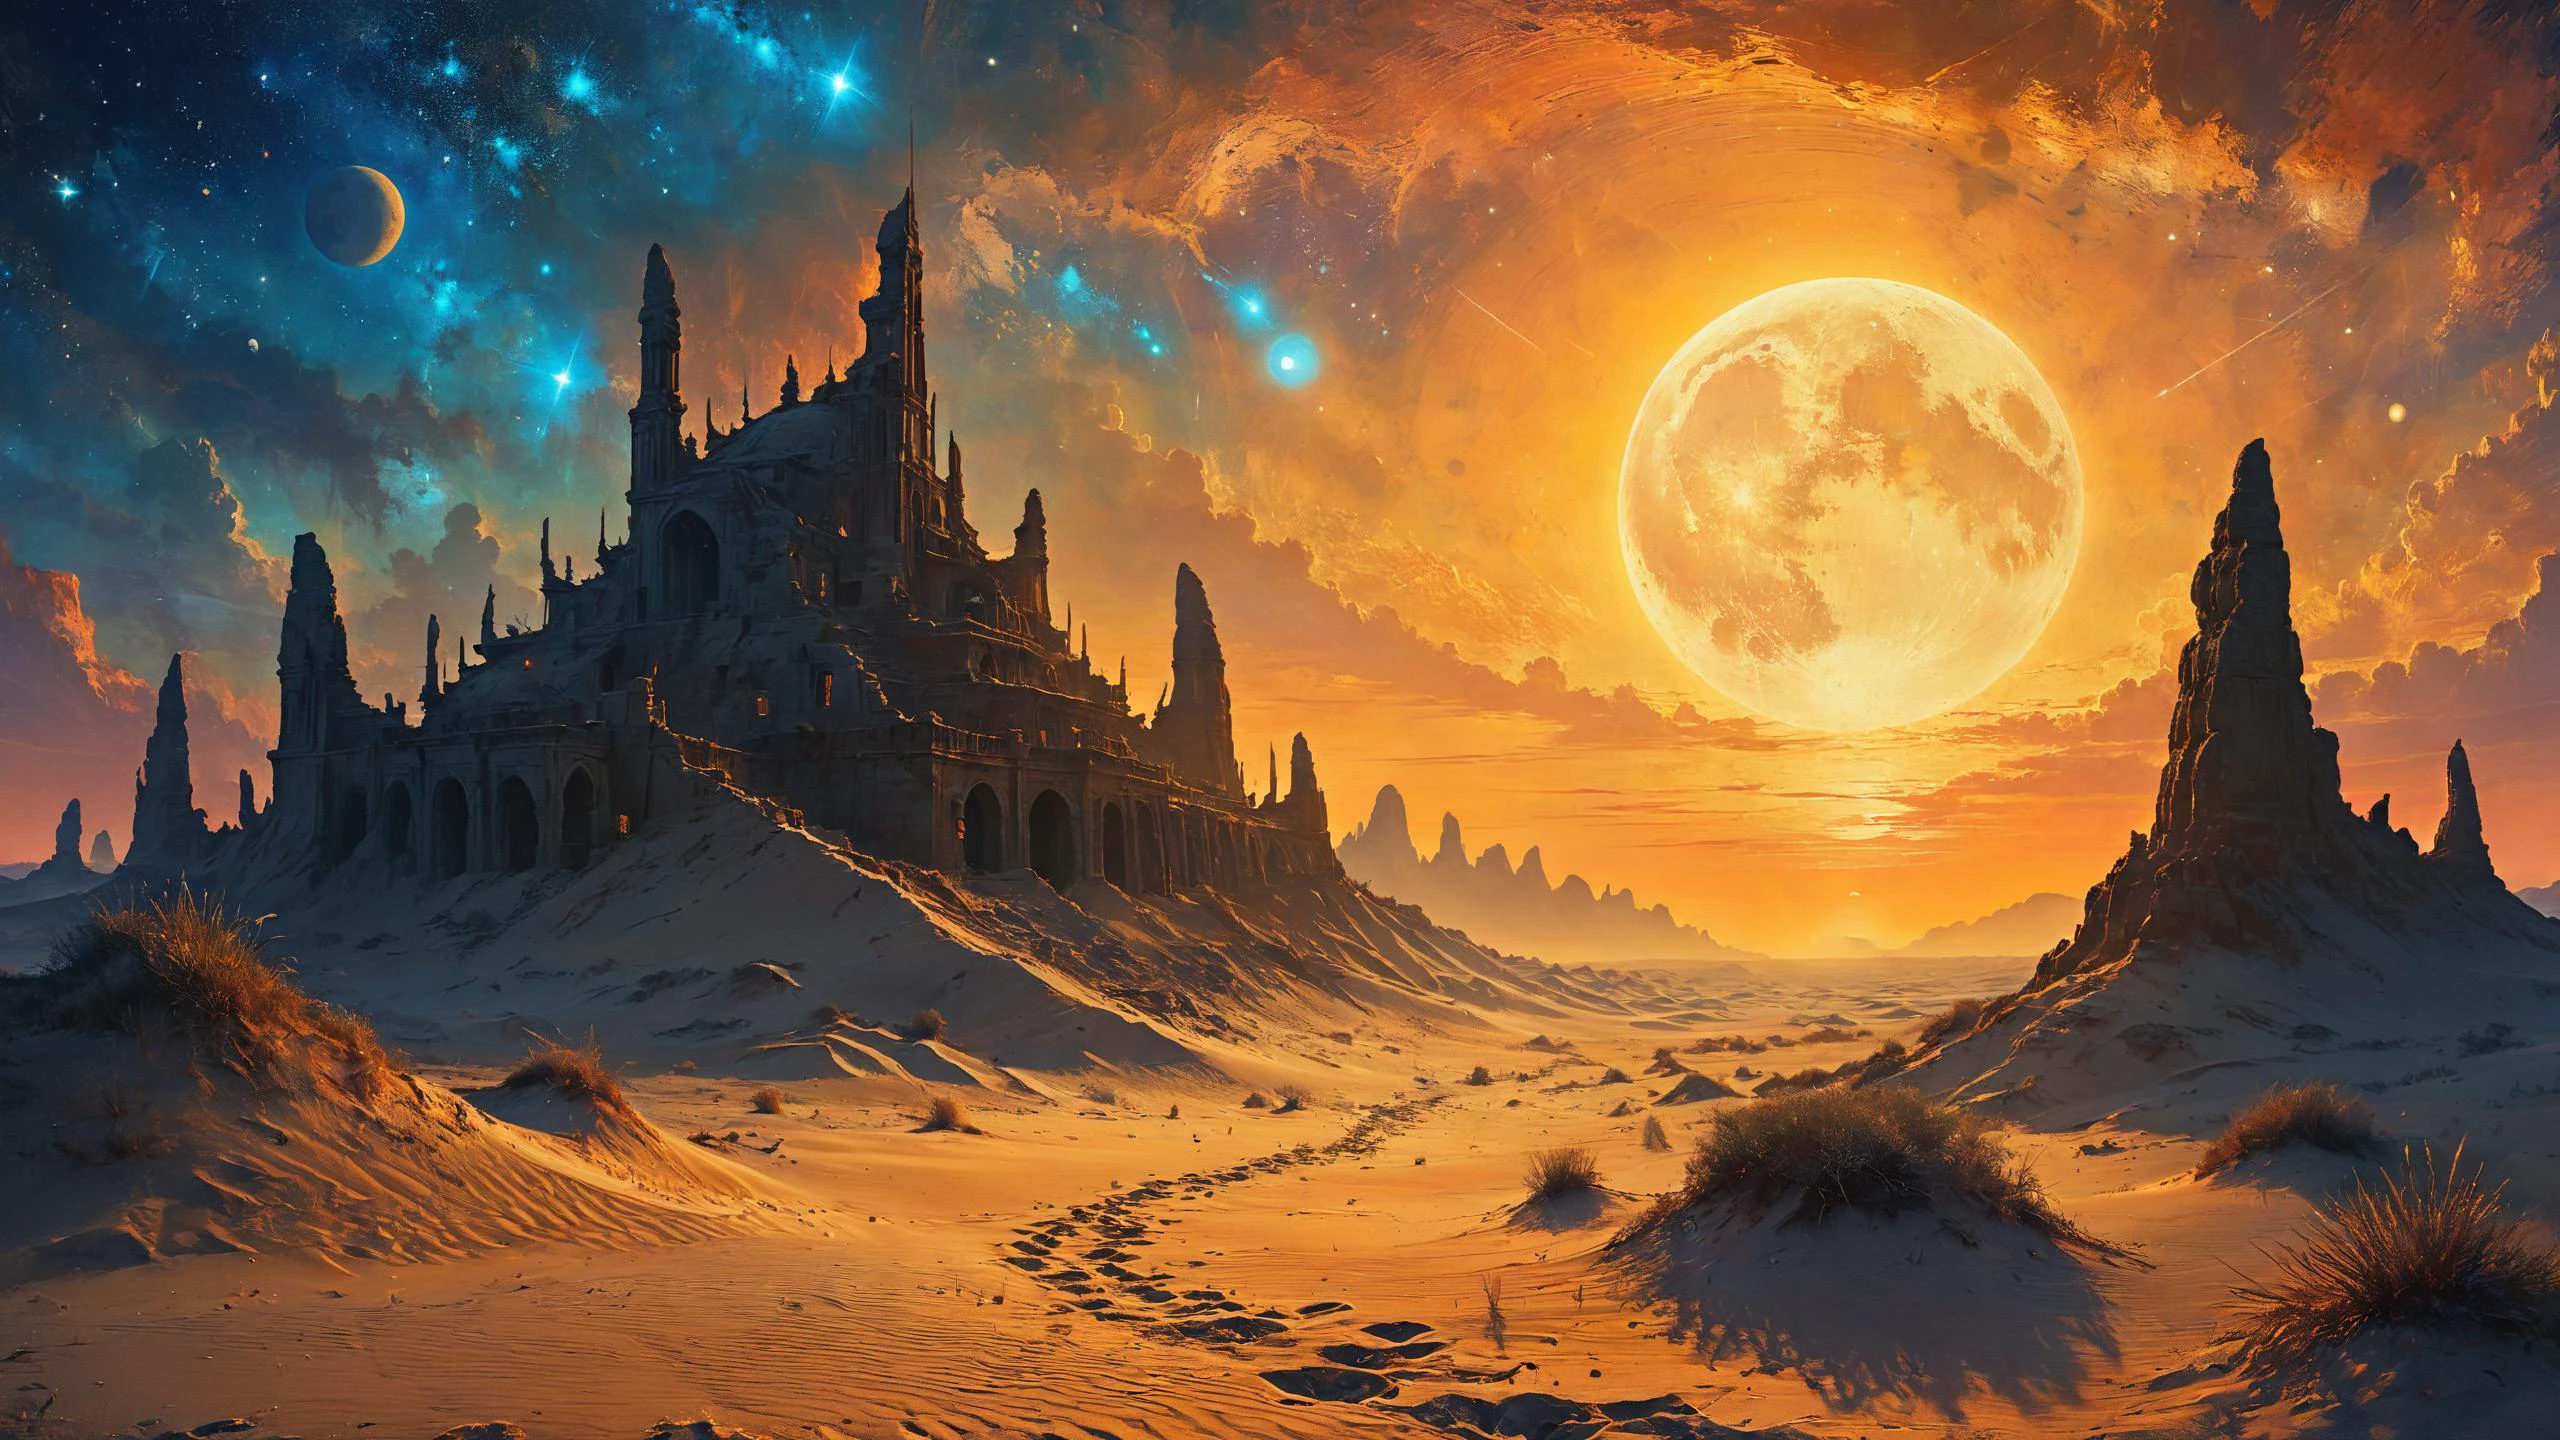 Die Ruinen einer außerirdischen Zivilisation, Verschiebende Sanddünen unter biolumineszierenden Monden im Hintergrund, Grelles Sonnenlicht, Dreamyvibes Artstyle